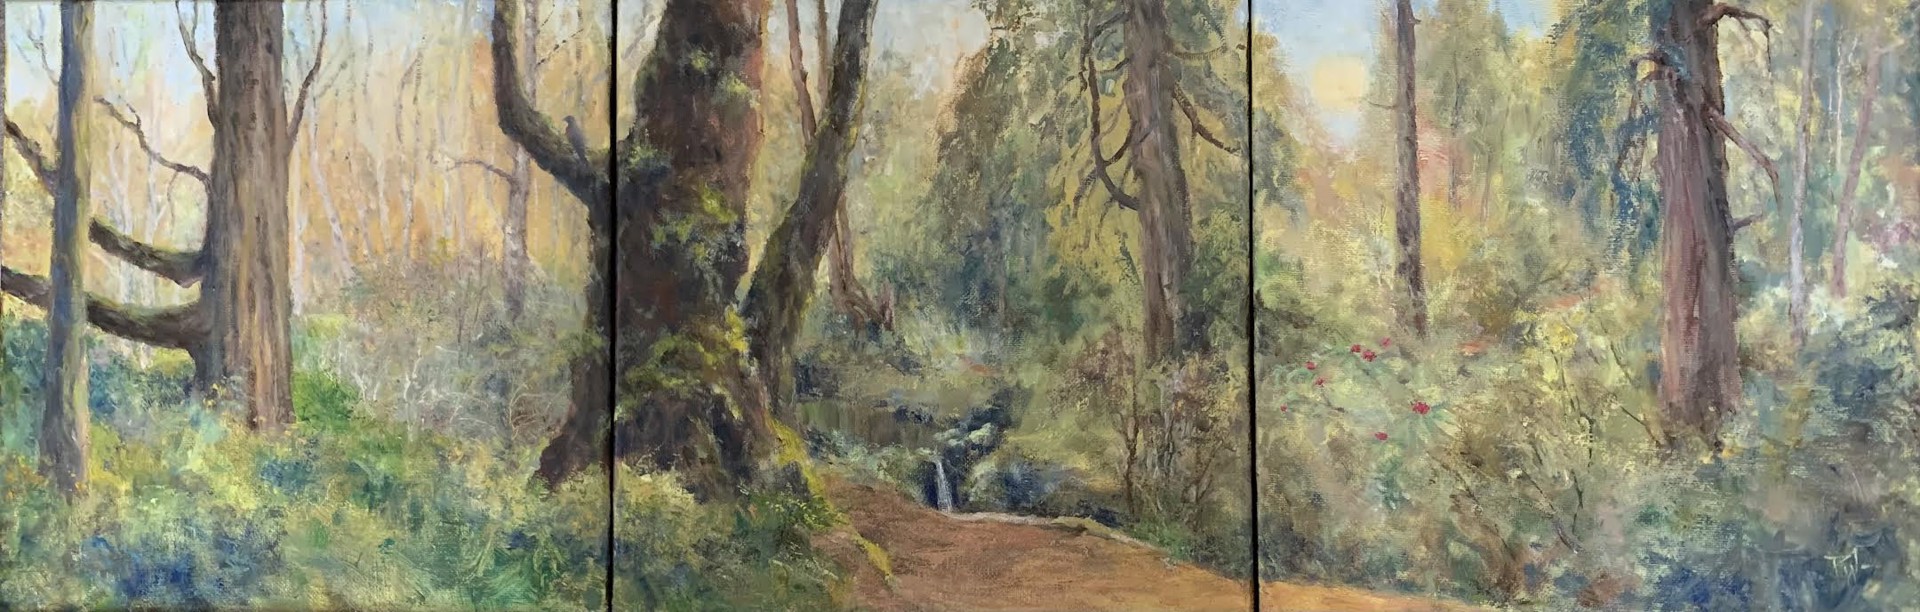 On A Walk In The Woods (Bloedel Reserve), Triptych by Pamela Wachtler